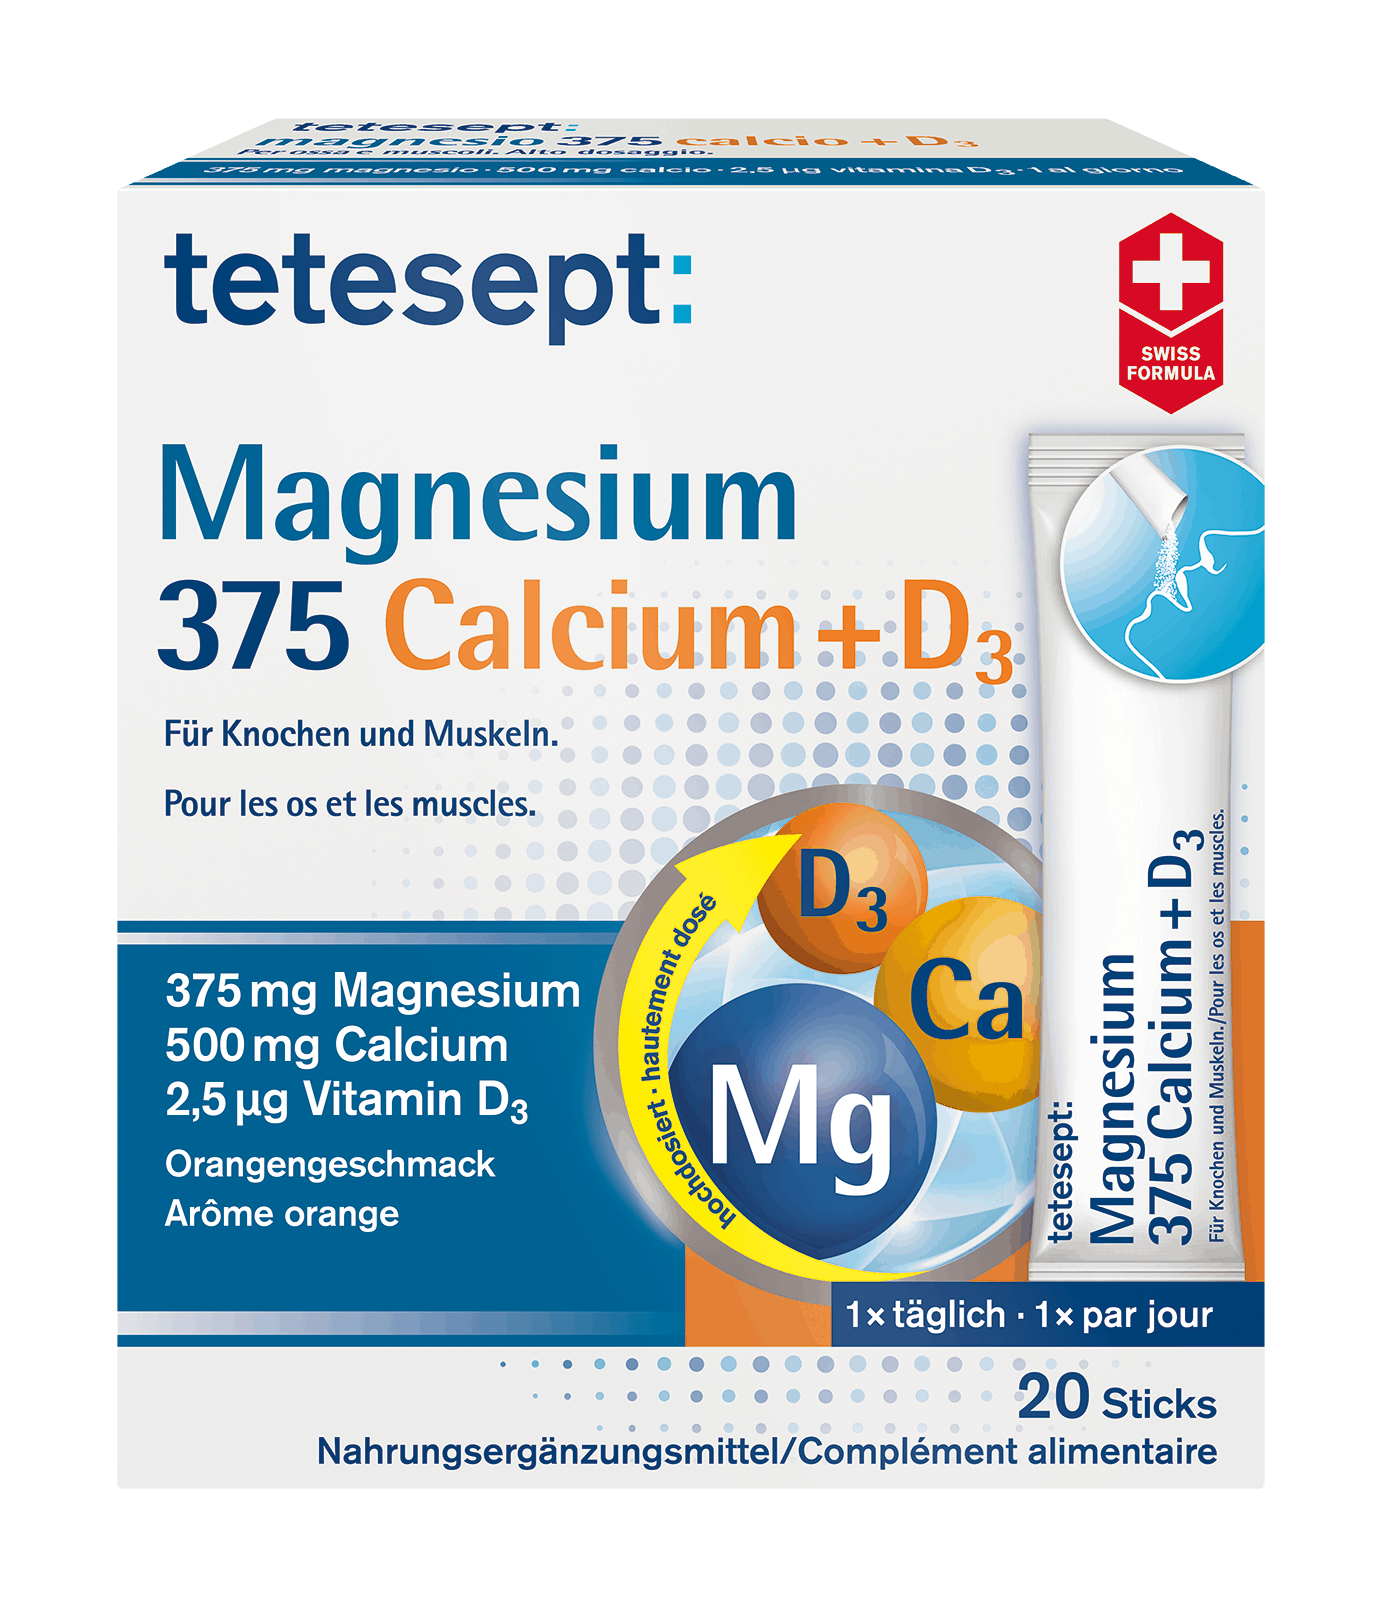 tetesept Magnesium 375 Calcium + D3 Sticks